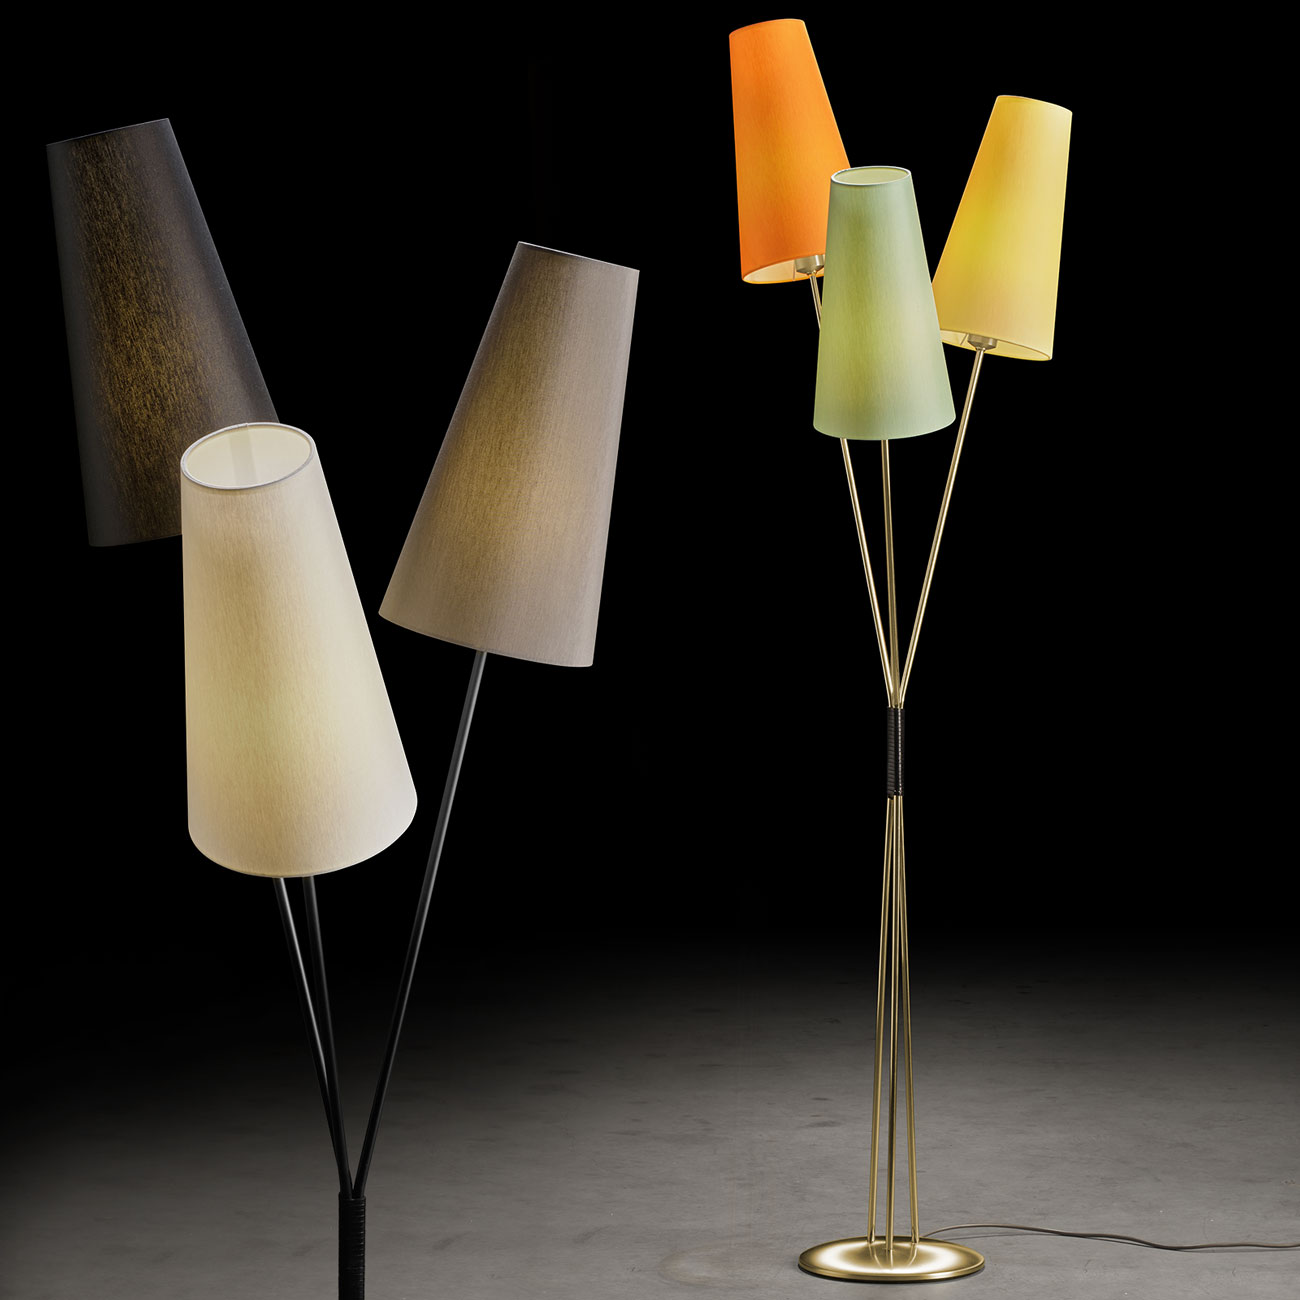 FIFTIES – Stehlampe im 50er Jahre-Look mit drei Schirmen im Bündel, viele Farben